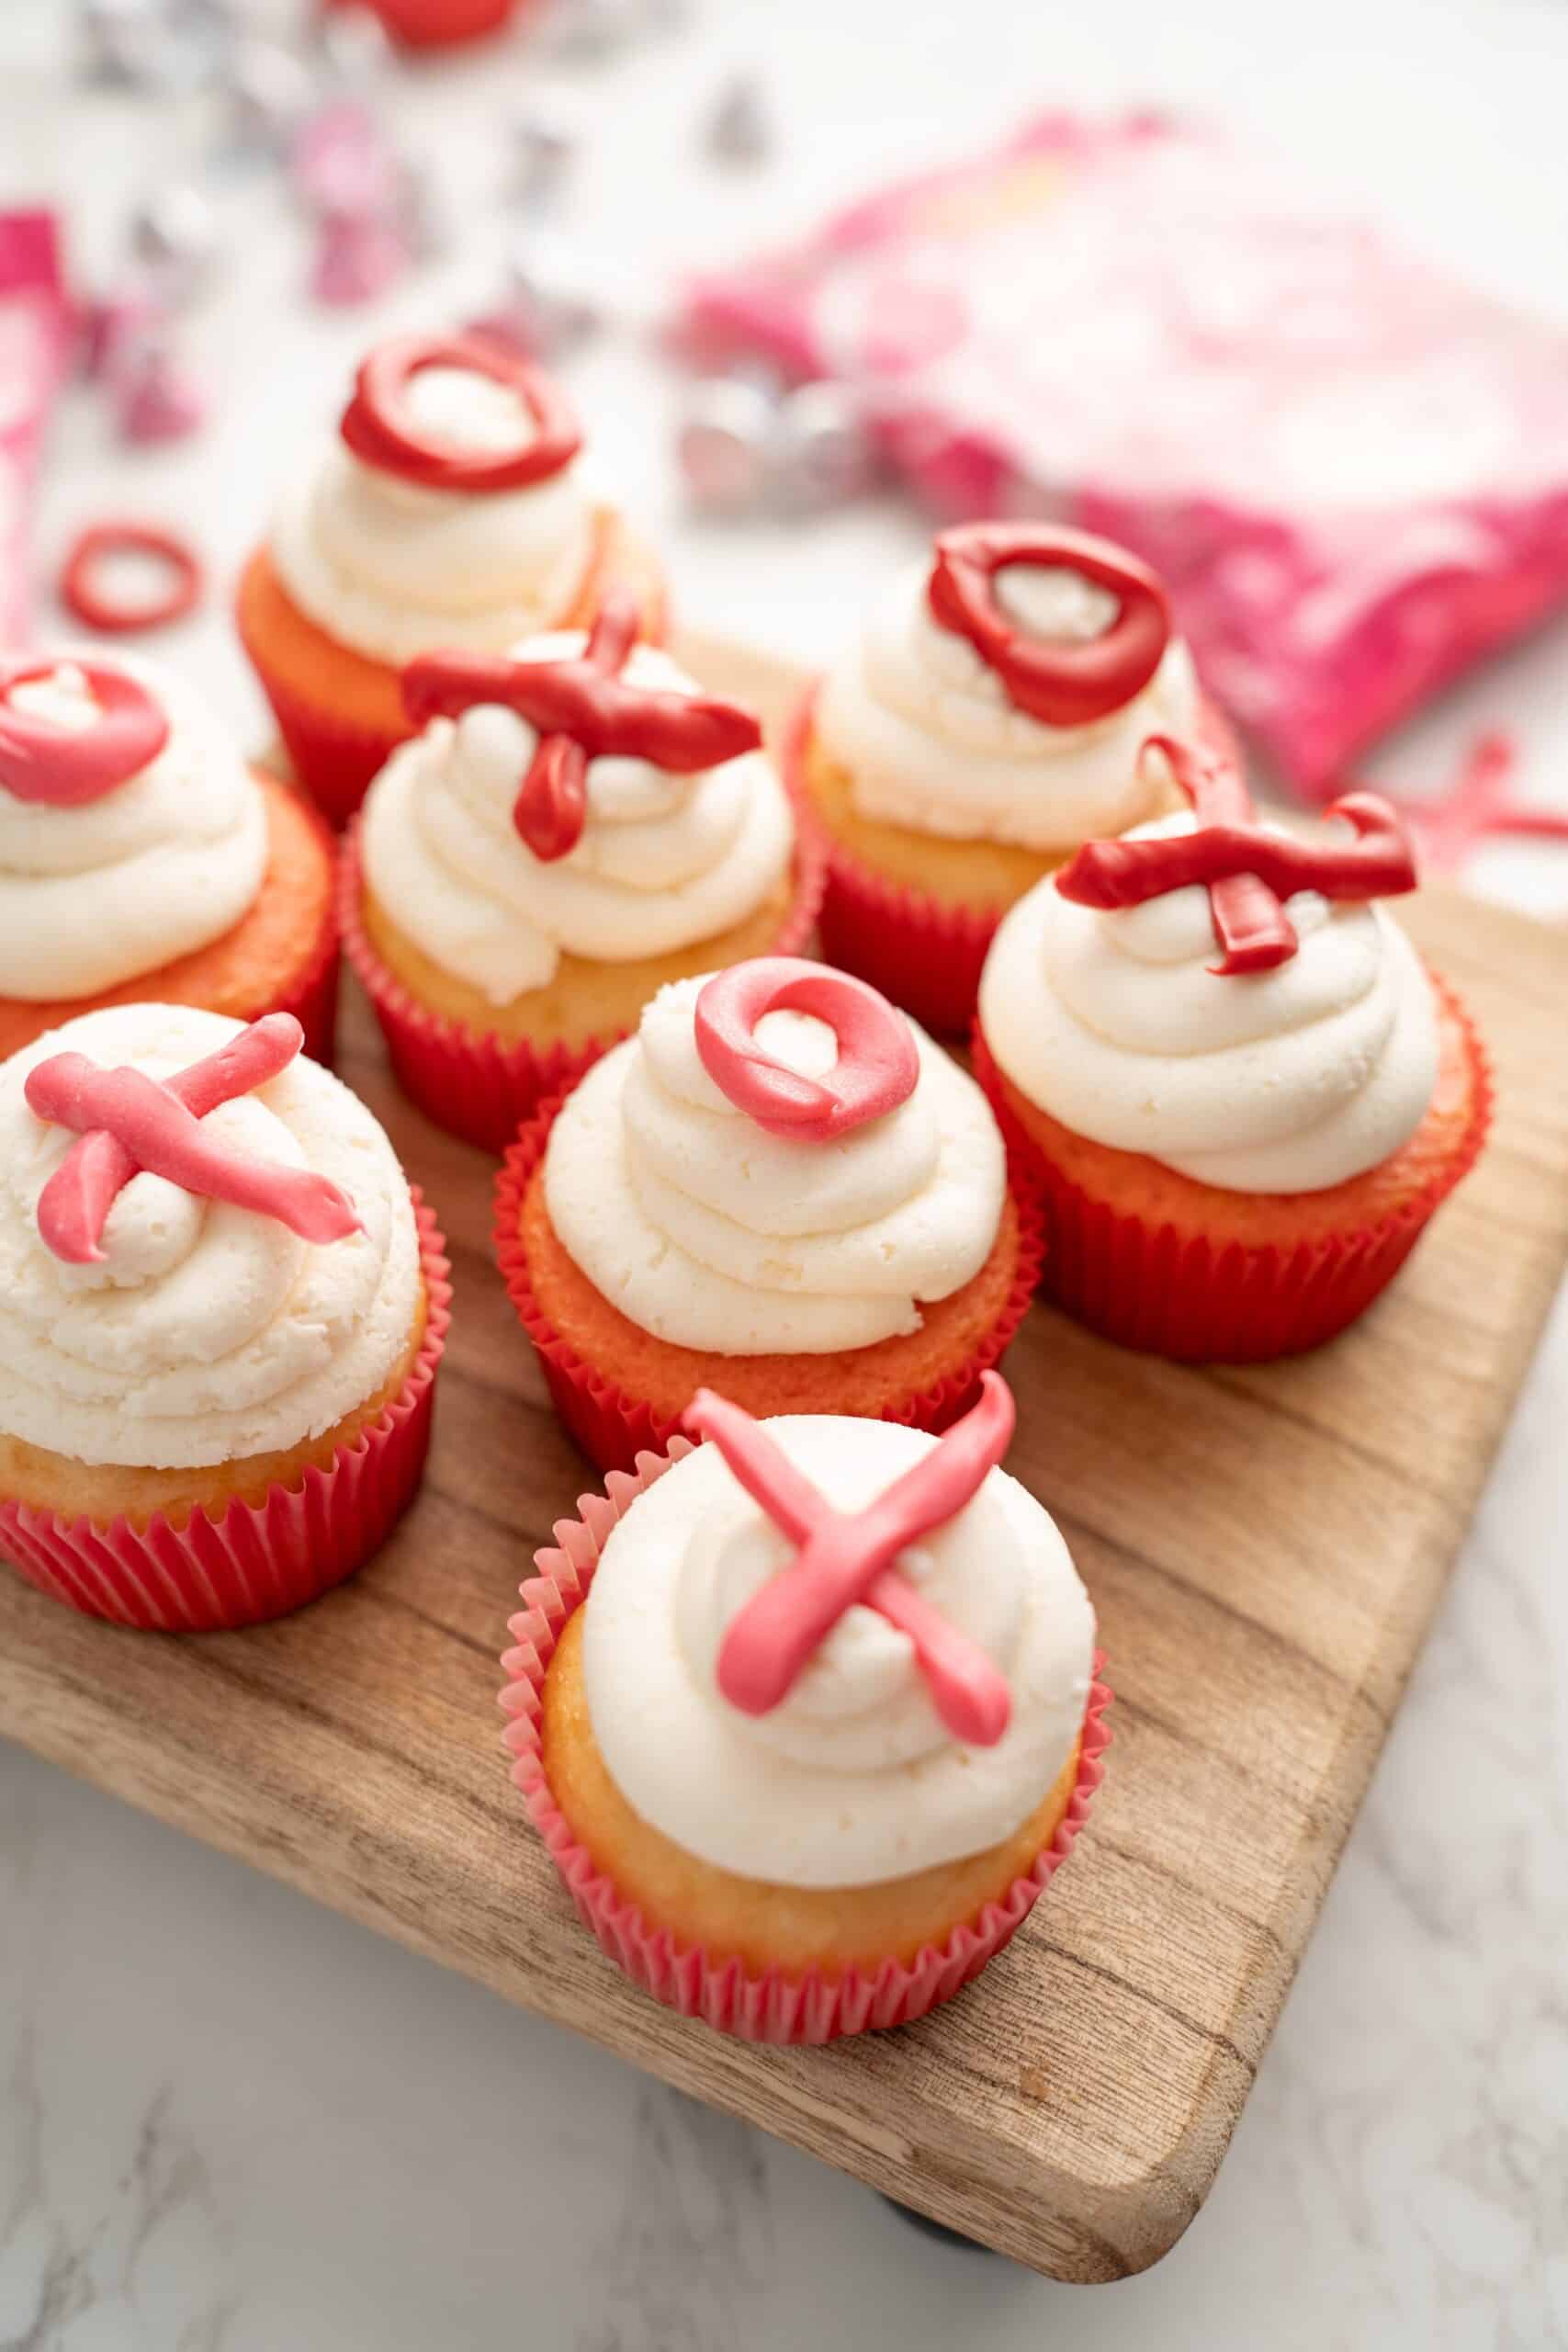 XOXO cupcakes (easy Valentine's cupcakes)